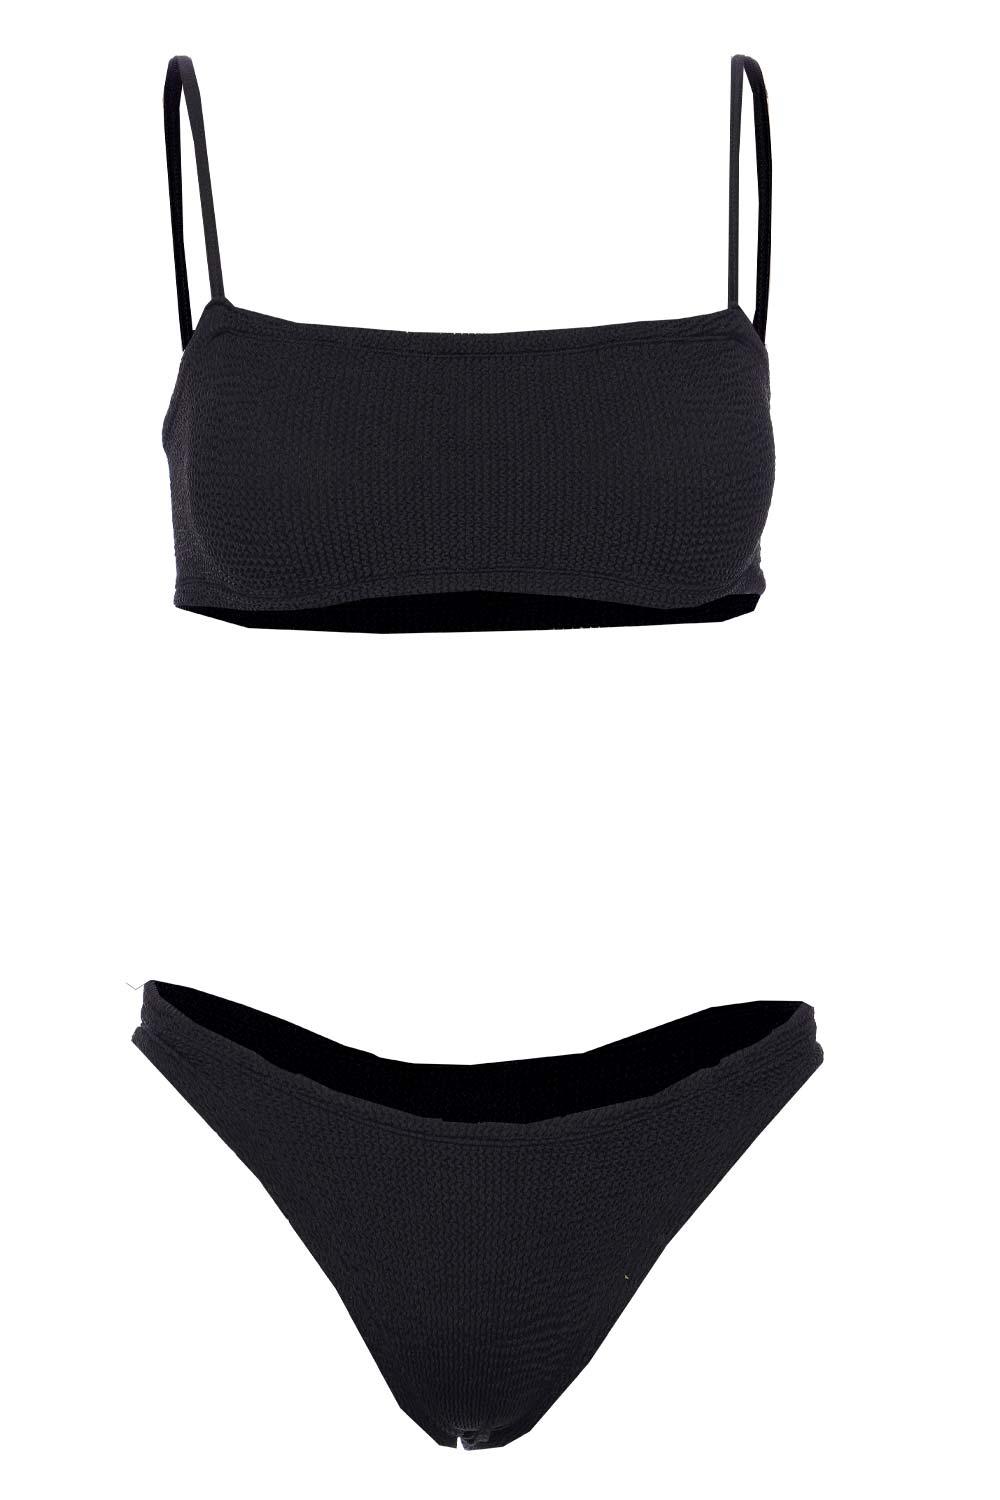 Hunza G Gigi Crinkle Bikini Set in Black | Lyst UK